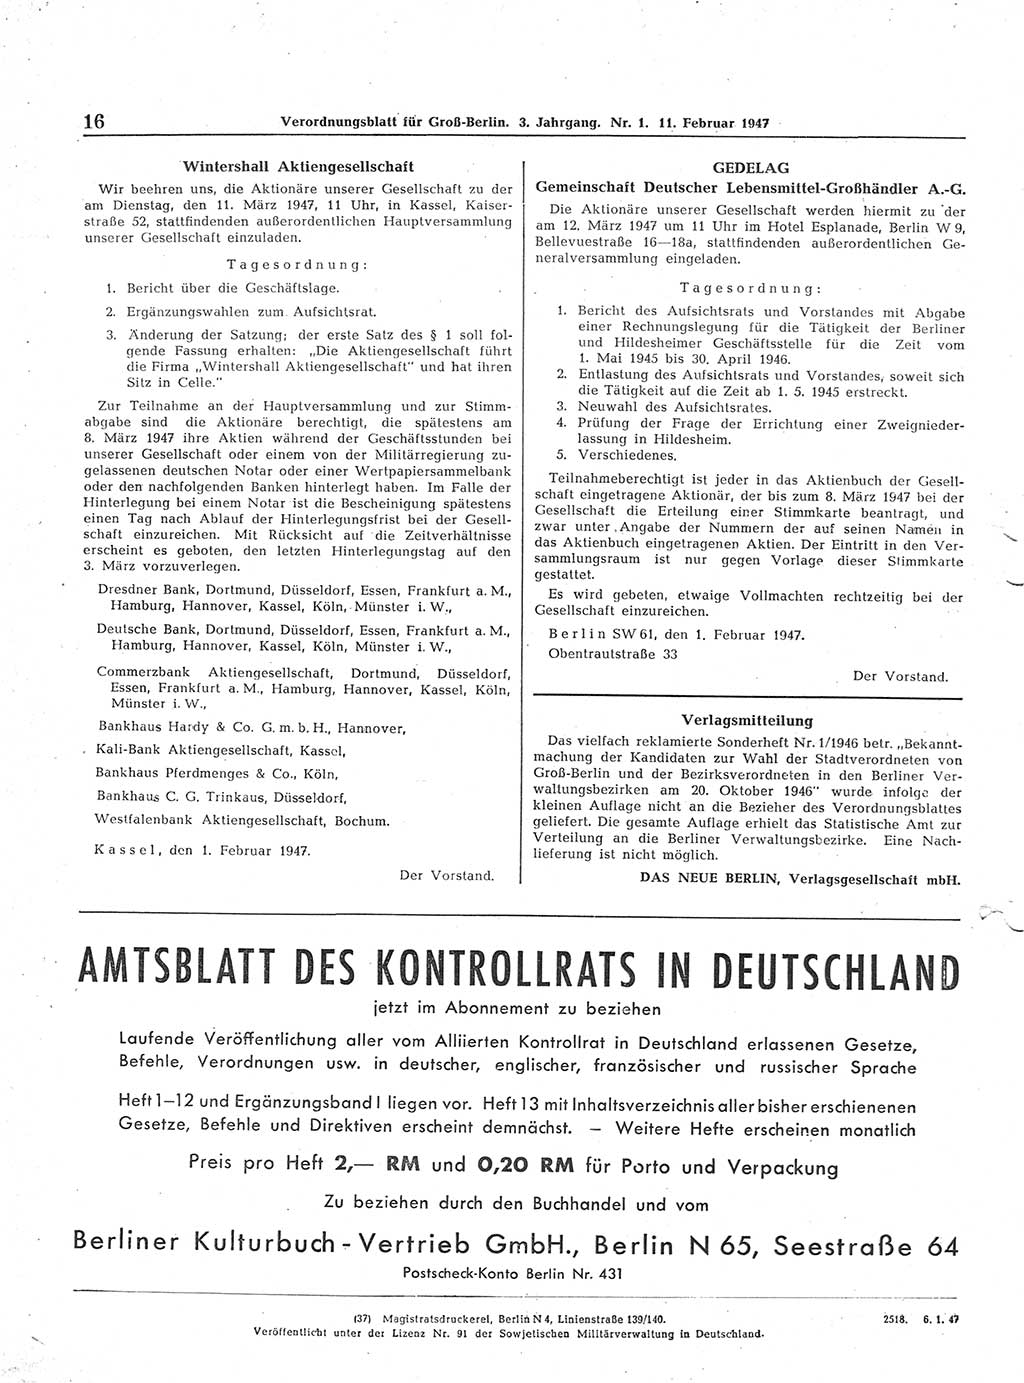 Verordnungsblatt (VOBl.) für Groß-Berlin 1947, Seite 16 (VOBl. Bln. 1947, S. 16)